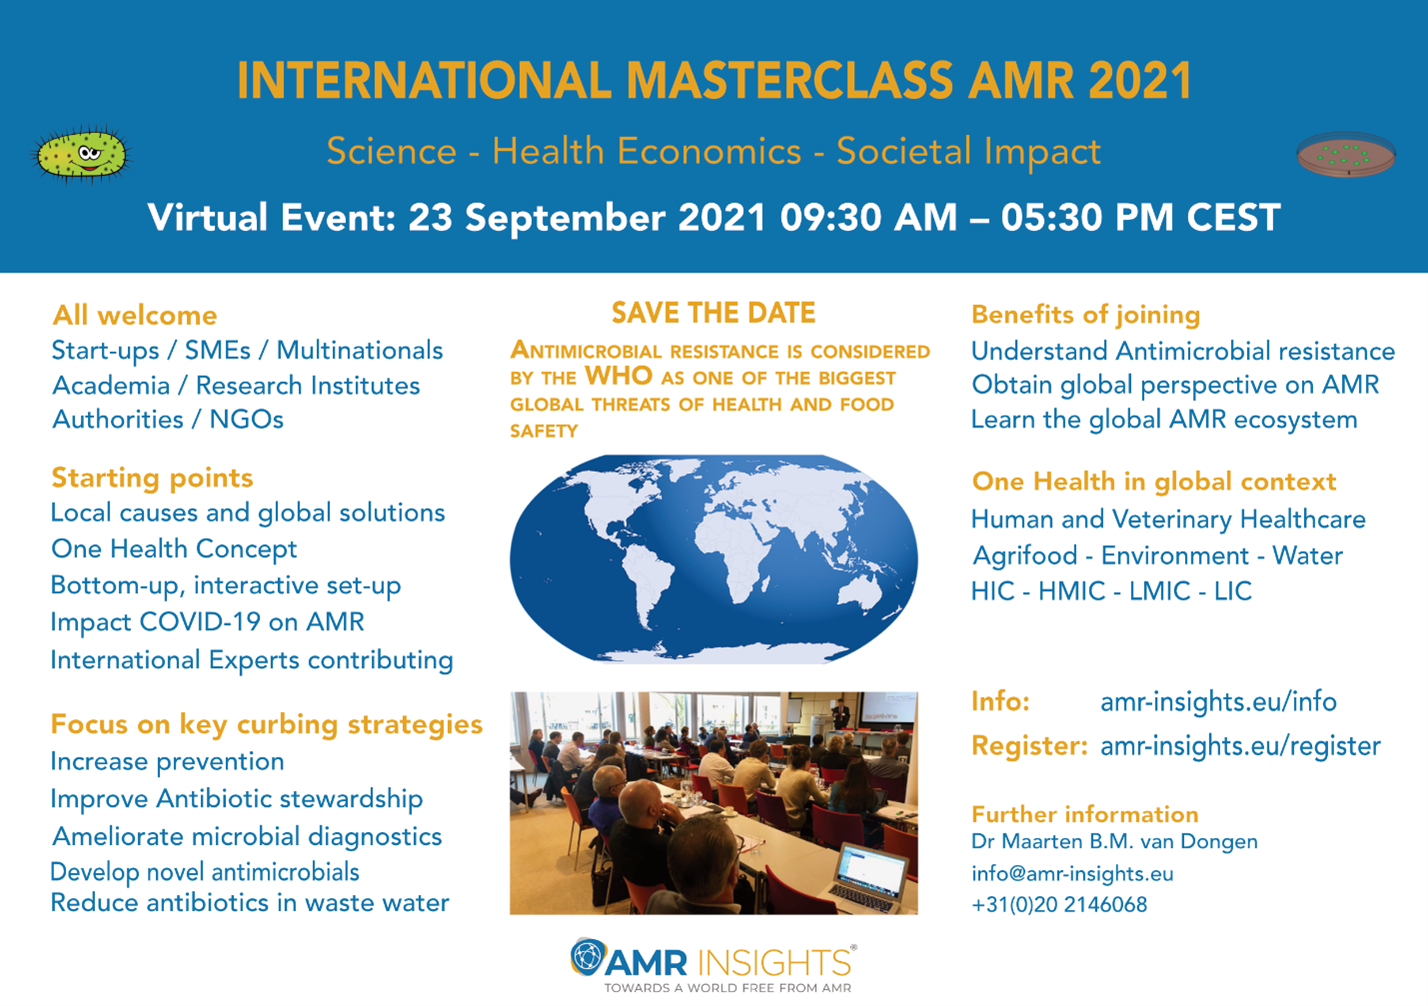 International Masterclass AMR 2021. Virtual Event: 23 September 2021 9:30 AM - 5:30 PM CEST. Further information: Dr. Maarten B.M. van Dongen, info@amr-insights.eu, +31(0)20 2146068